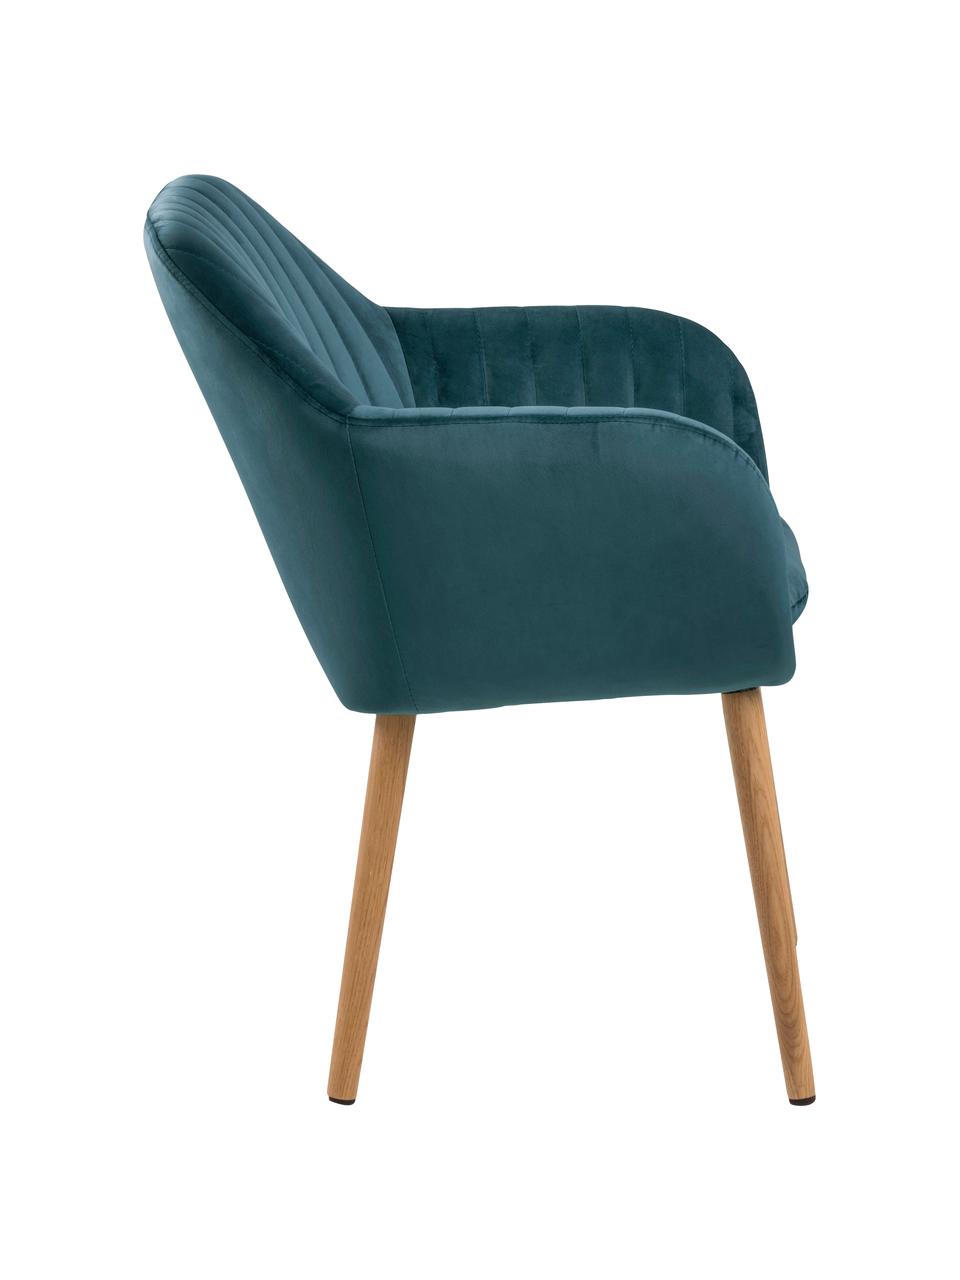 Sametová židle s područkami a dřevěnými nohami Emilia, Modrá, dubové dřevo, Š 57 cm, H 59 cm